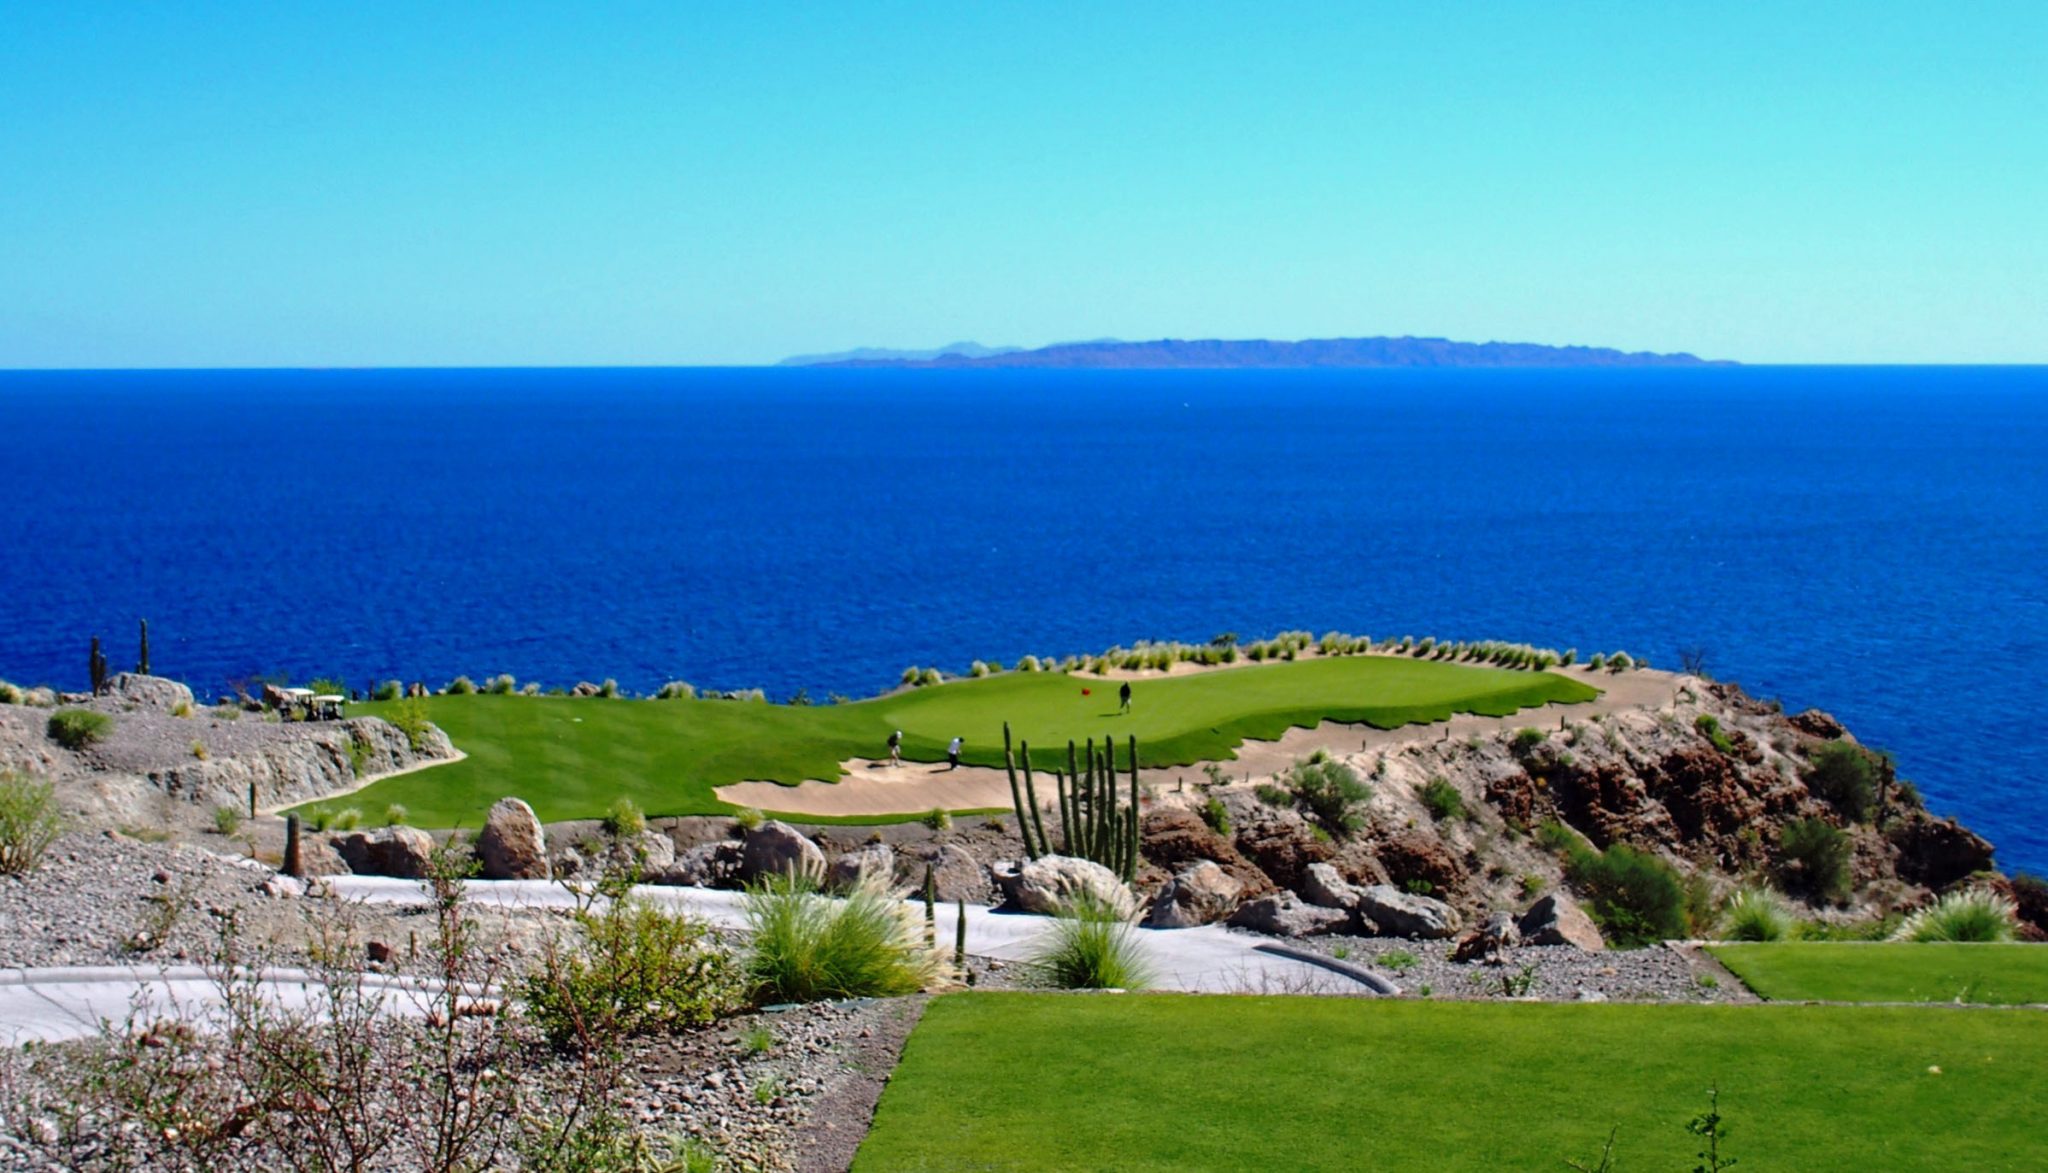 Inauguran Club de Golf Danzante Bay en Baja California Sur